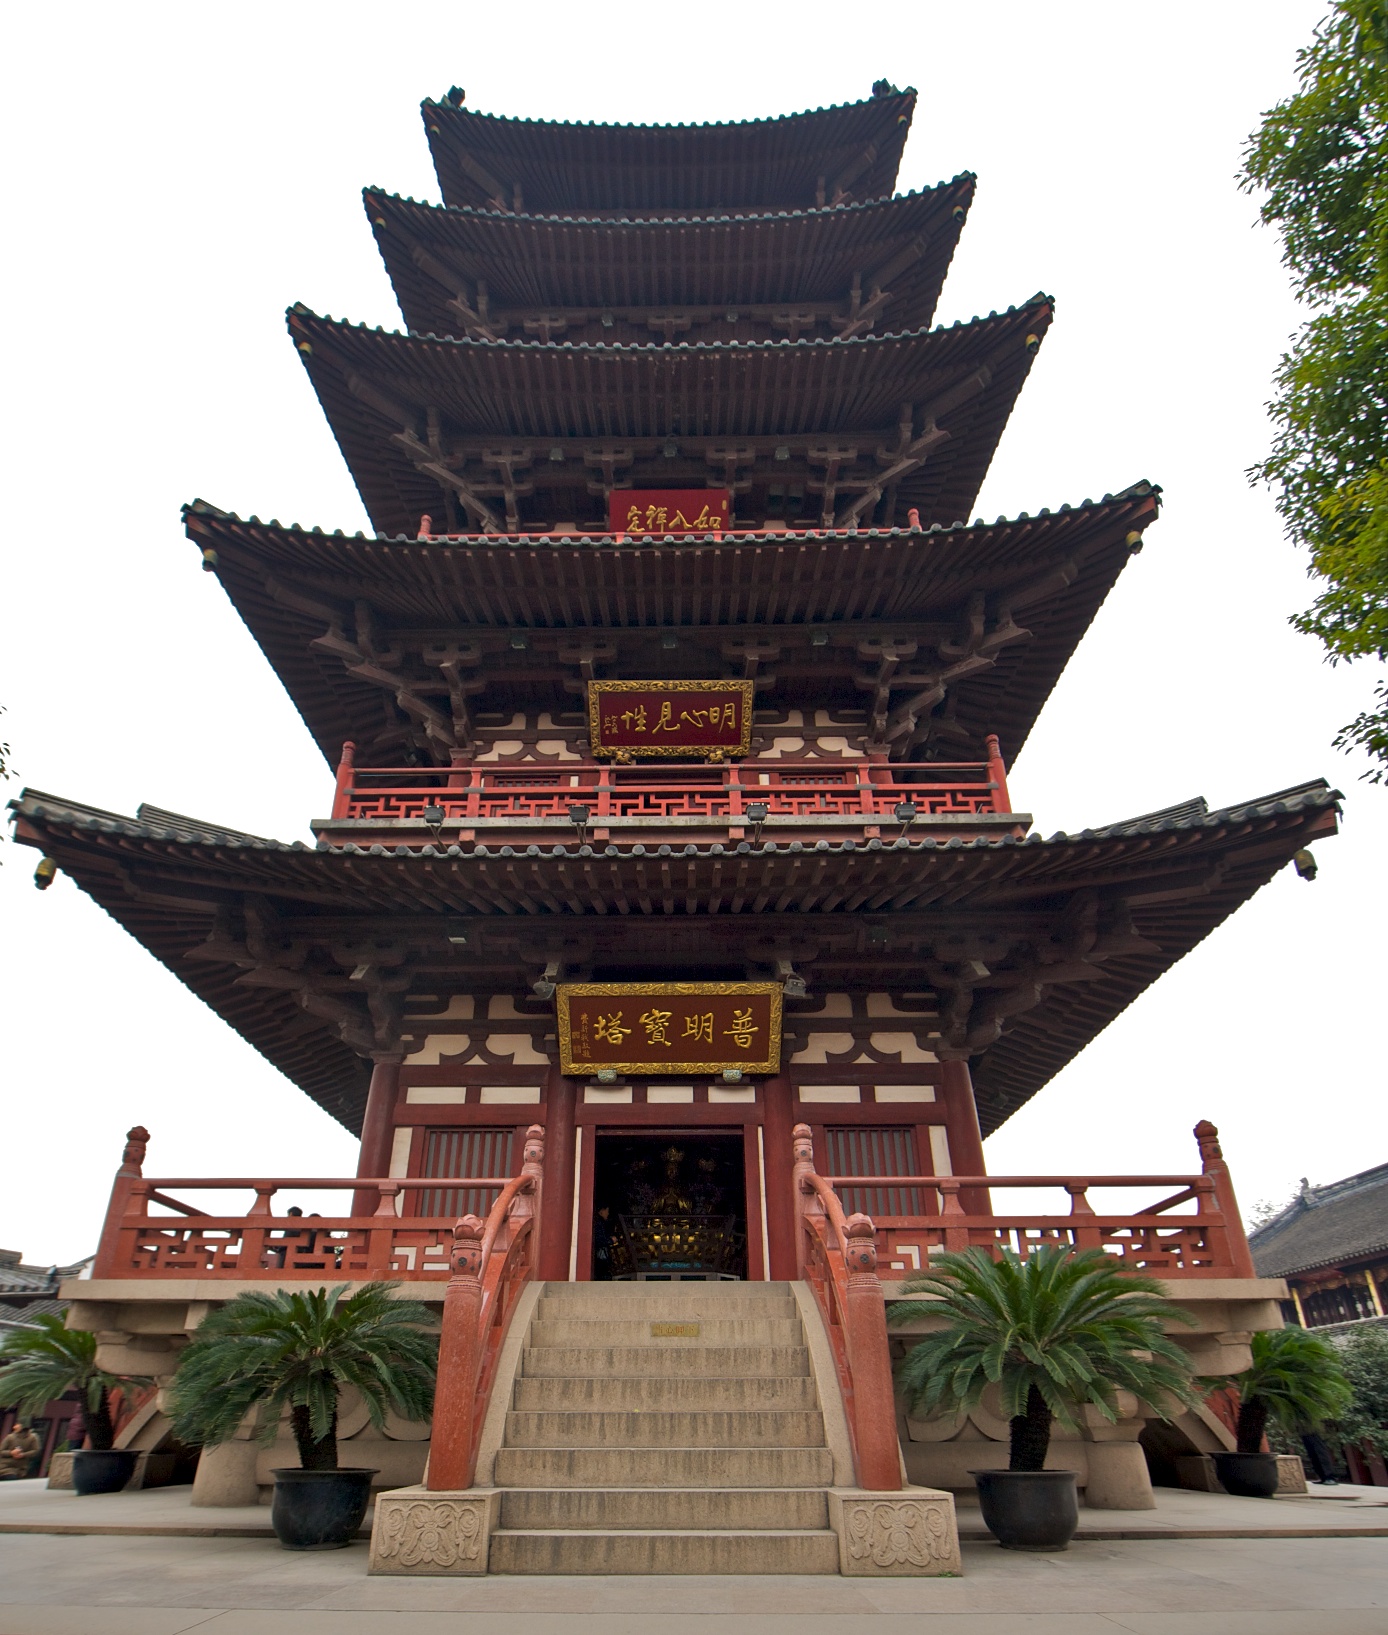 Висячий храм Ханьшань внутри